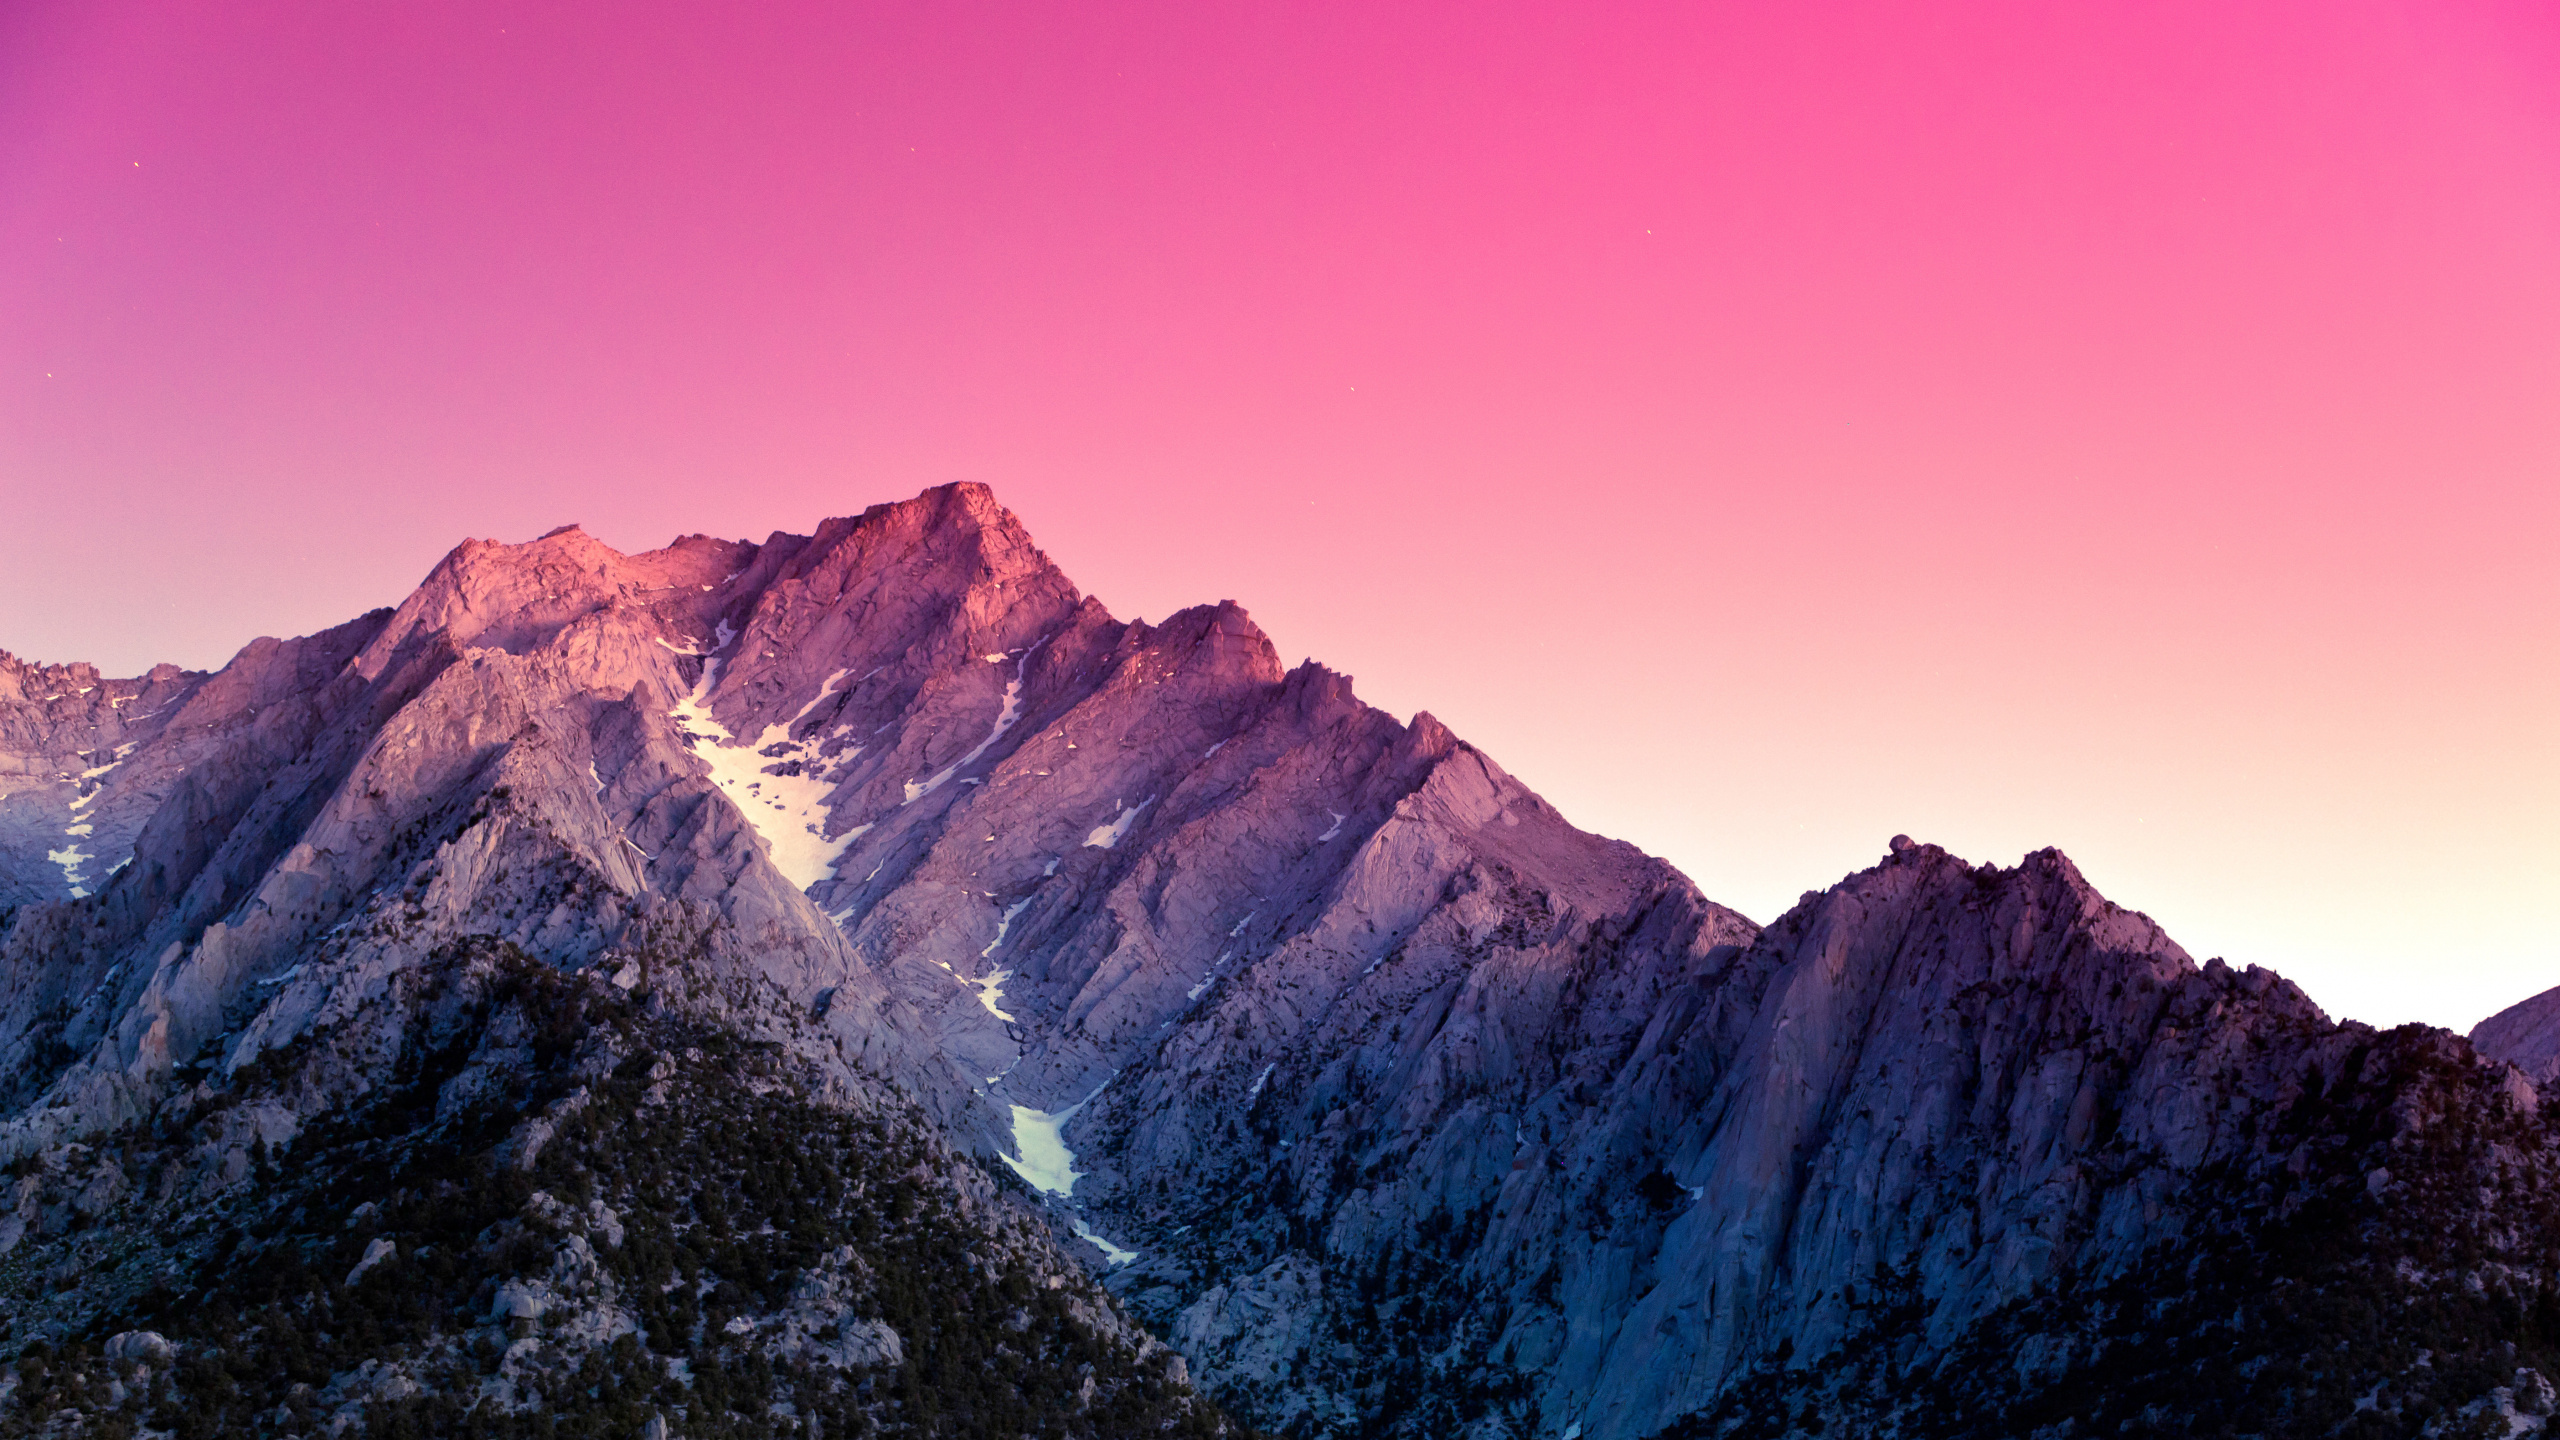 Montagne Rocheuse Brune et Grise Sous Ciel Bleu Pendant la Journée. Wallpaper in 2560x1440 Resolution